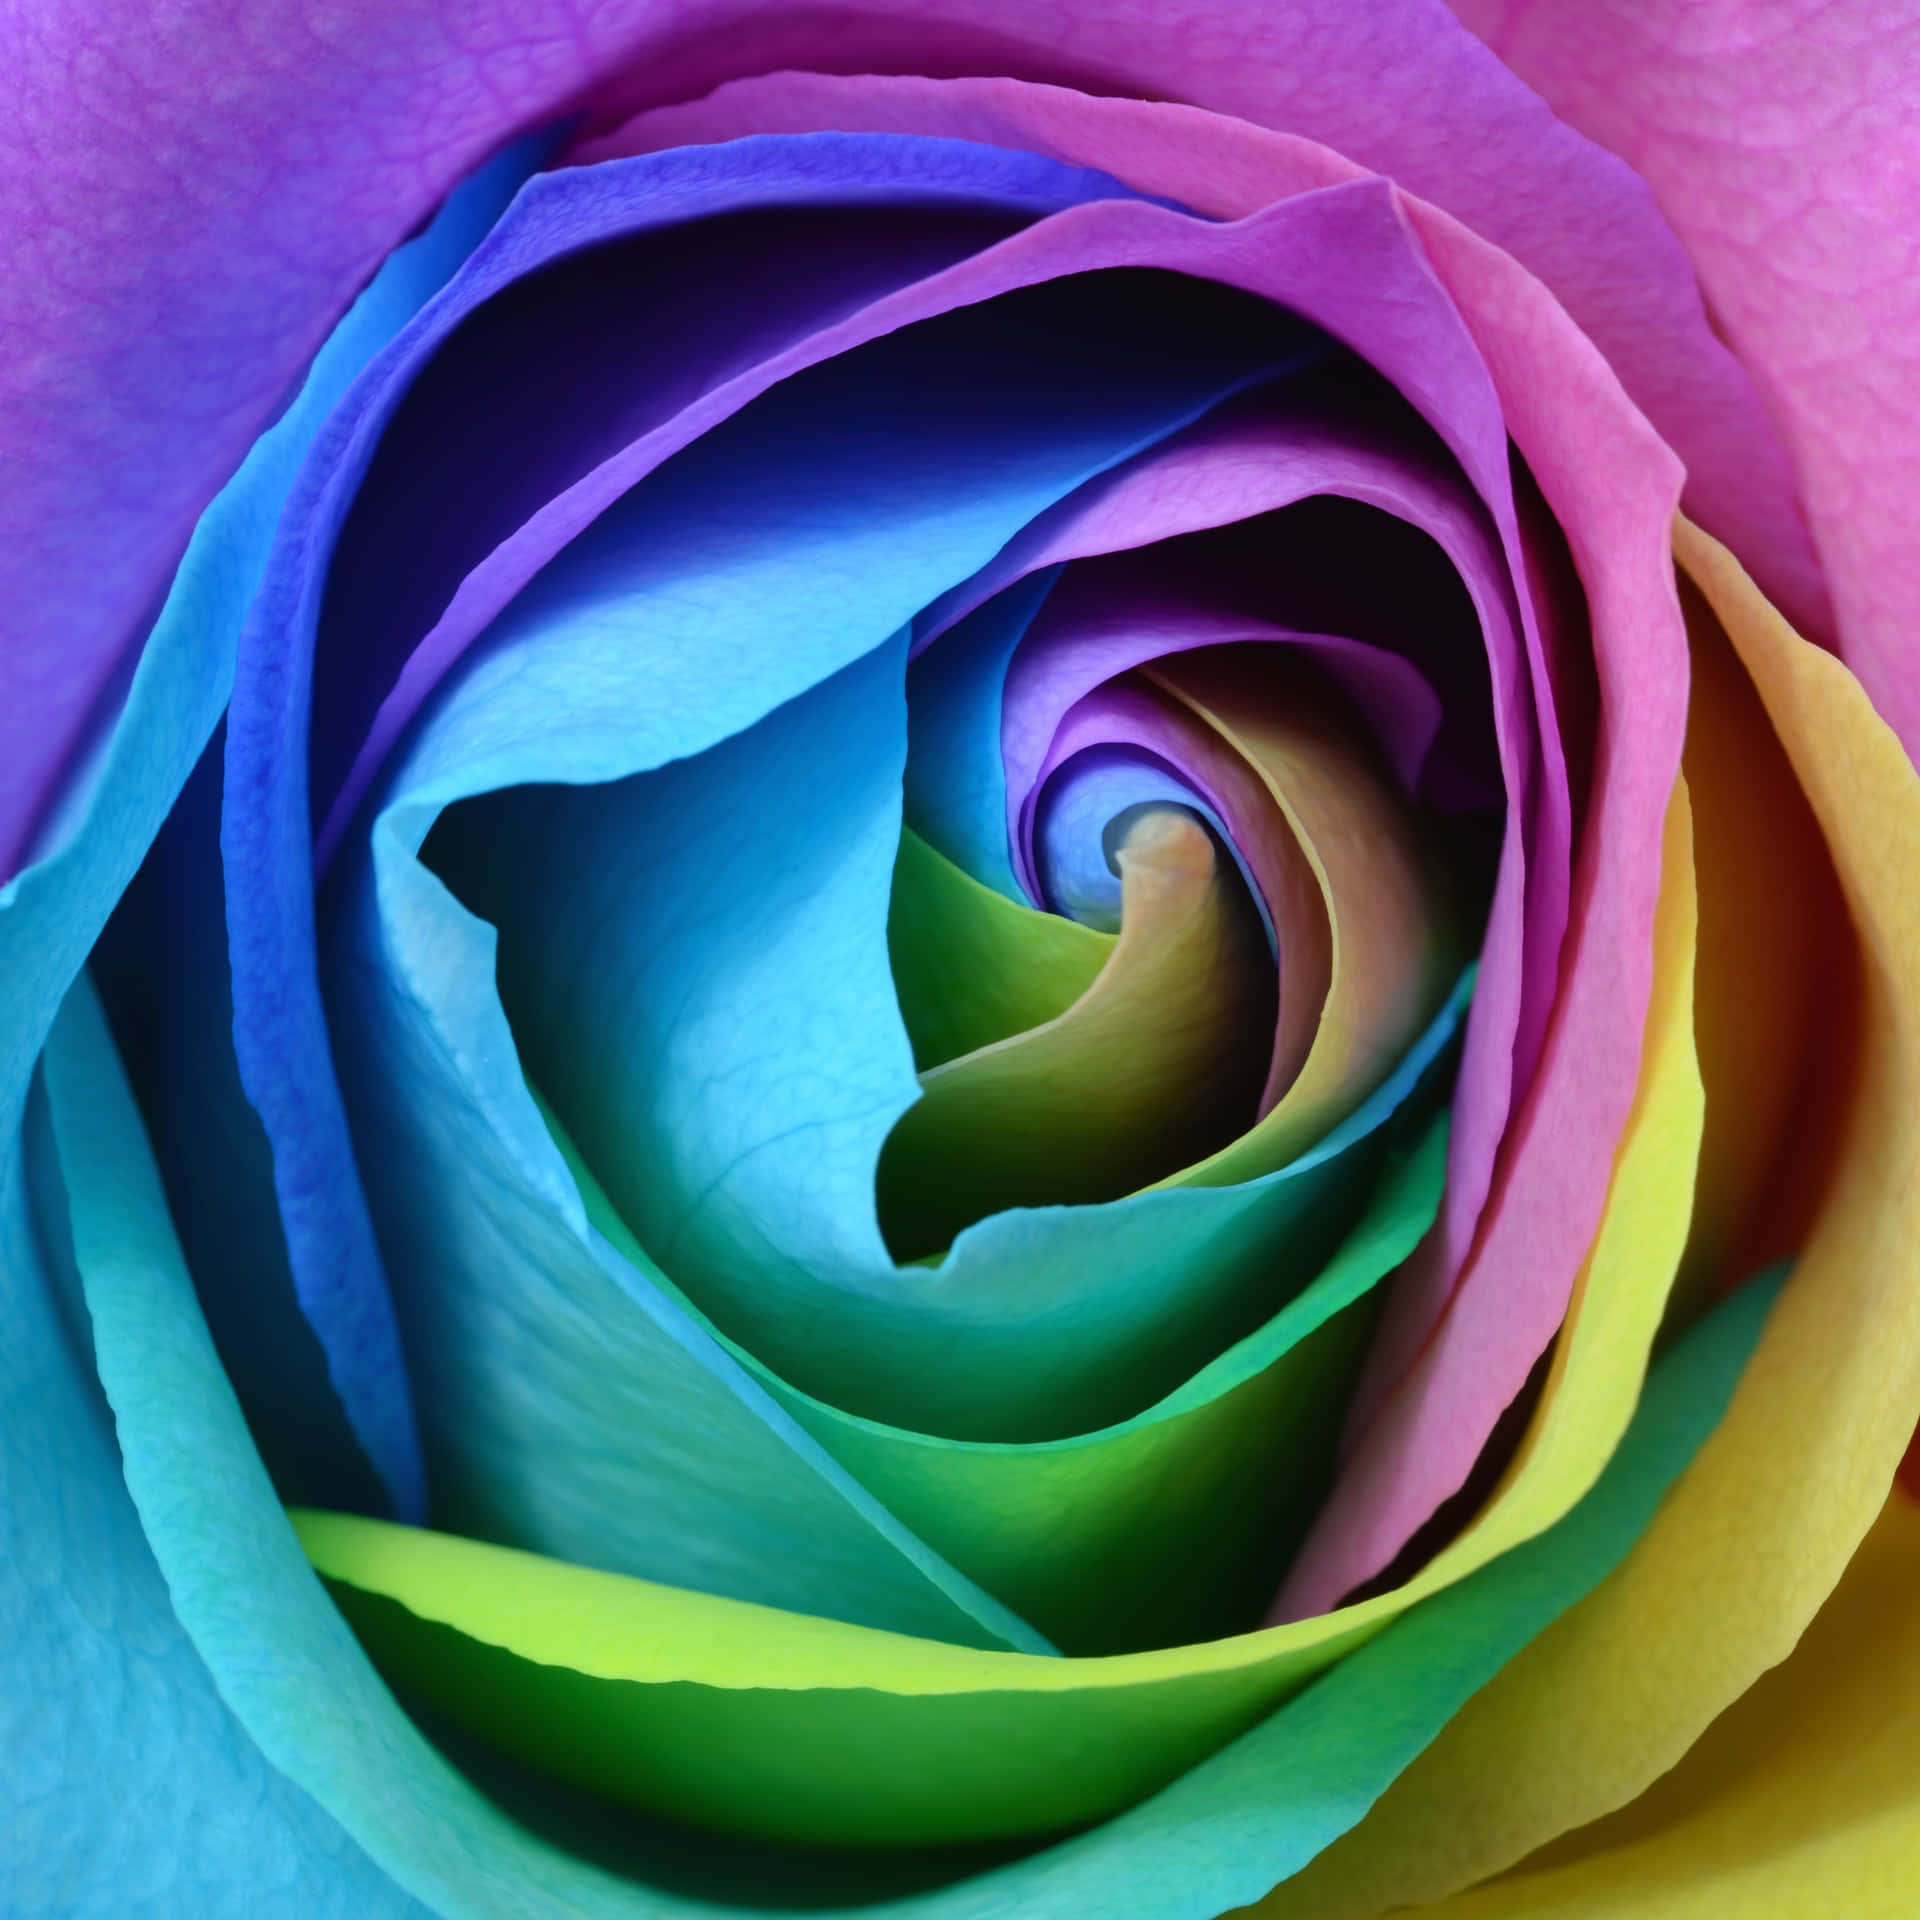 Bellissimerose Immagine Di Arte Digitale Con Arcobaleno Di Fiori